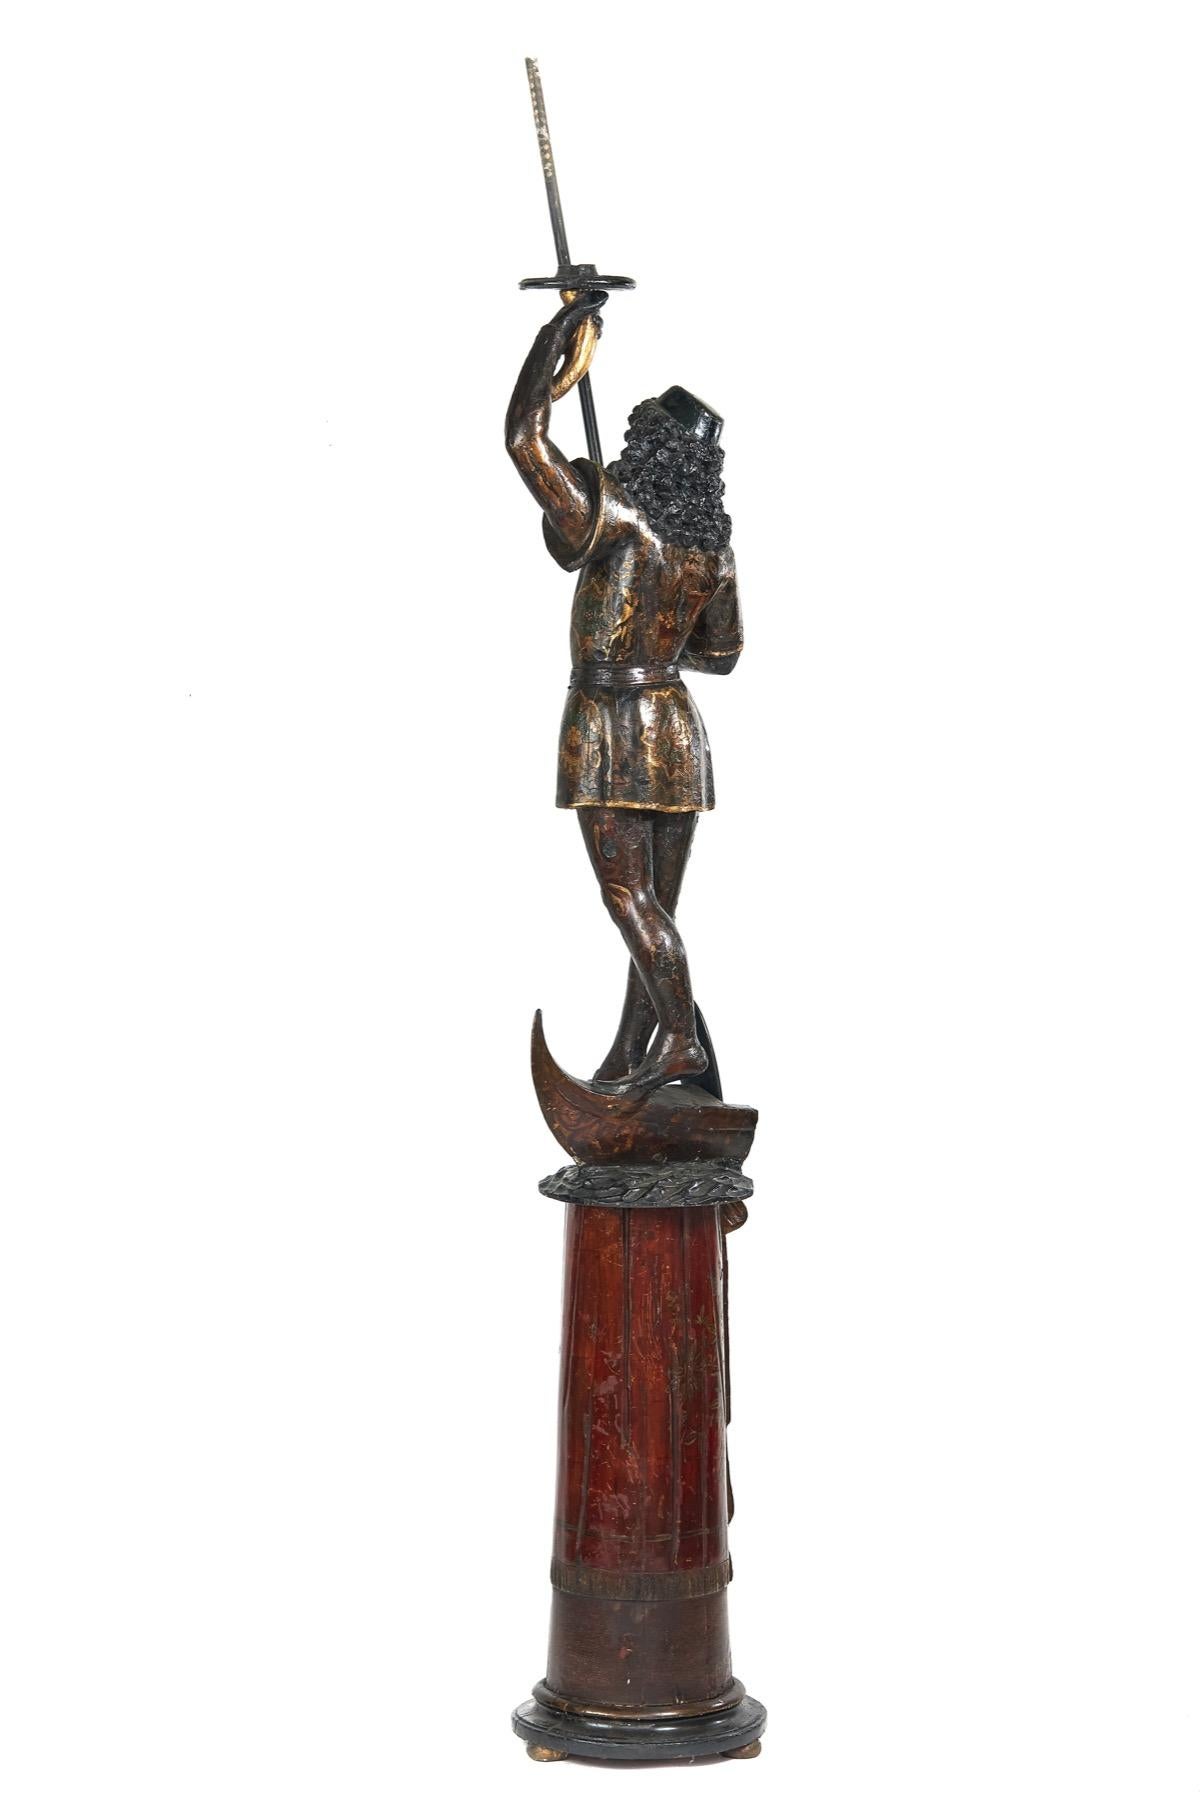 Chandelier vénitien du XIXe siècle à figure de gondolier sculptée,
Décoration polychrome
Gondolier, tenant une pagaie et un porte-bougie en forme de corne d'abondance.
Debout sur une partie de la gondole
La colonne cylindrique conique séparée repose